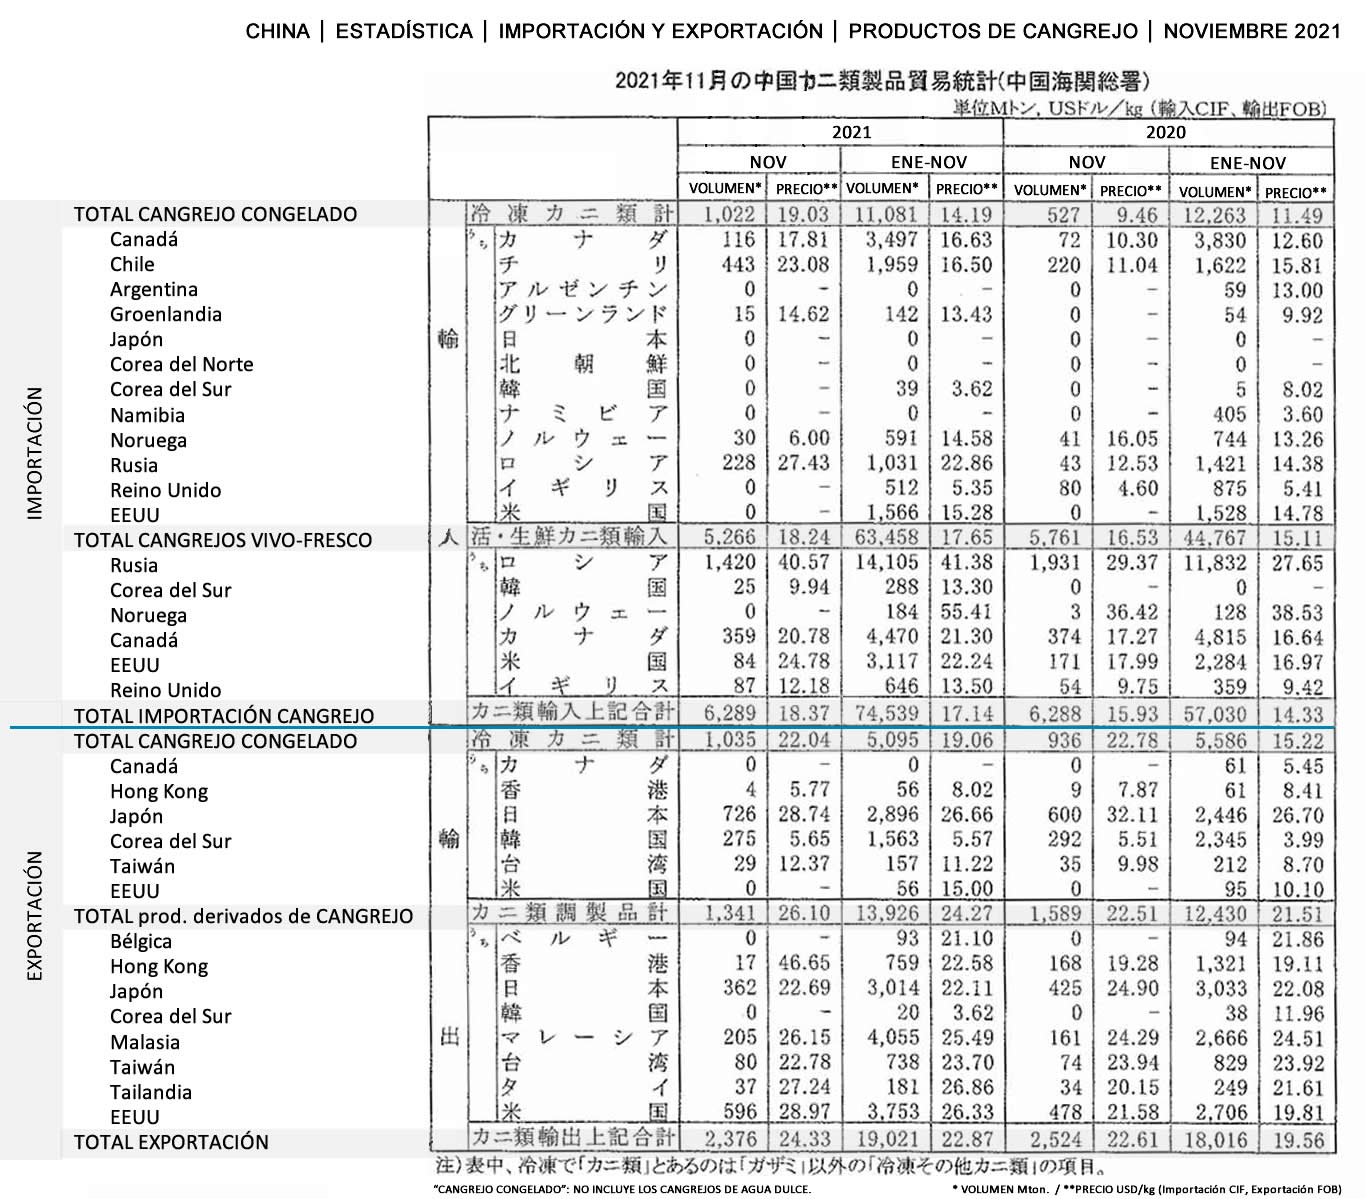 2022010702esp-China-Estadistica de importacion y exportacion de productos de cangrejo FIS seafood_media.jpg